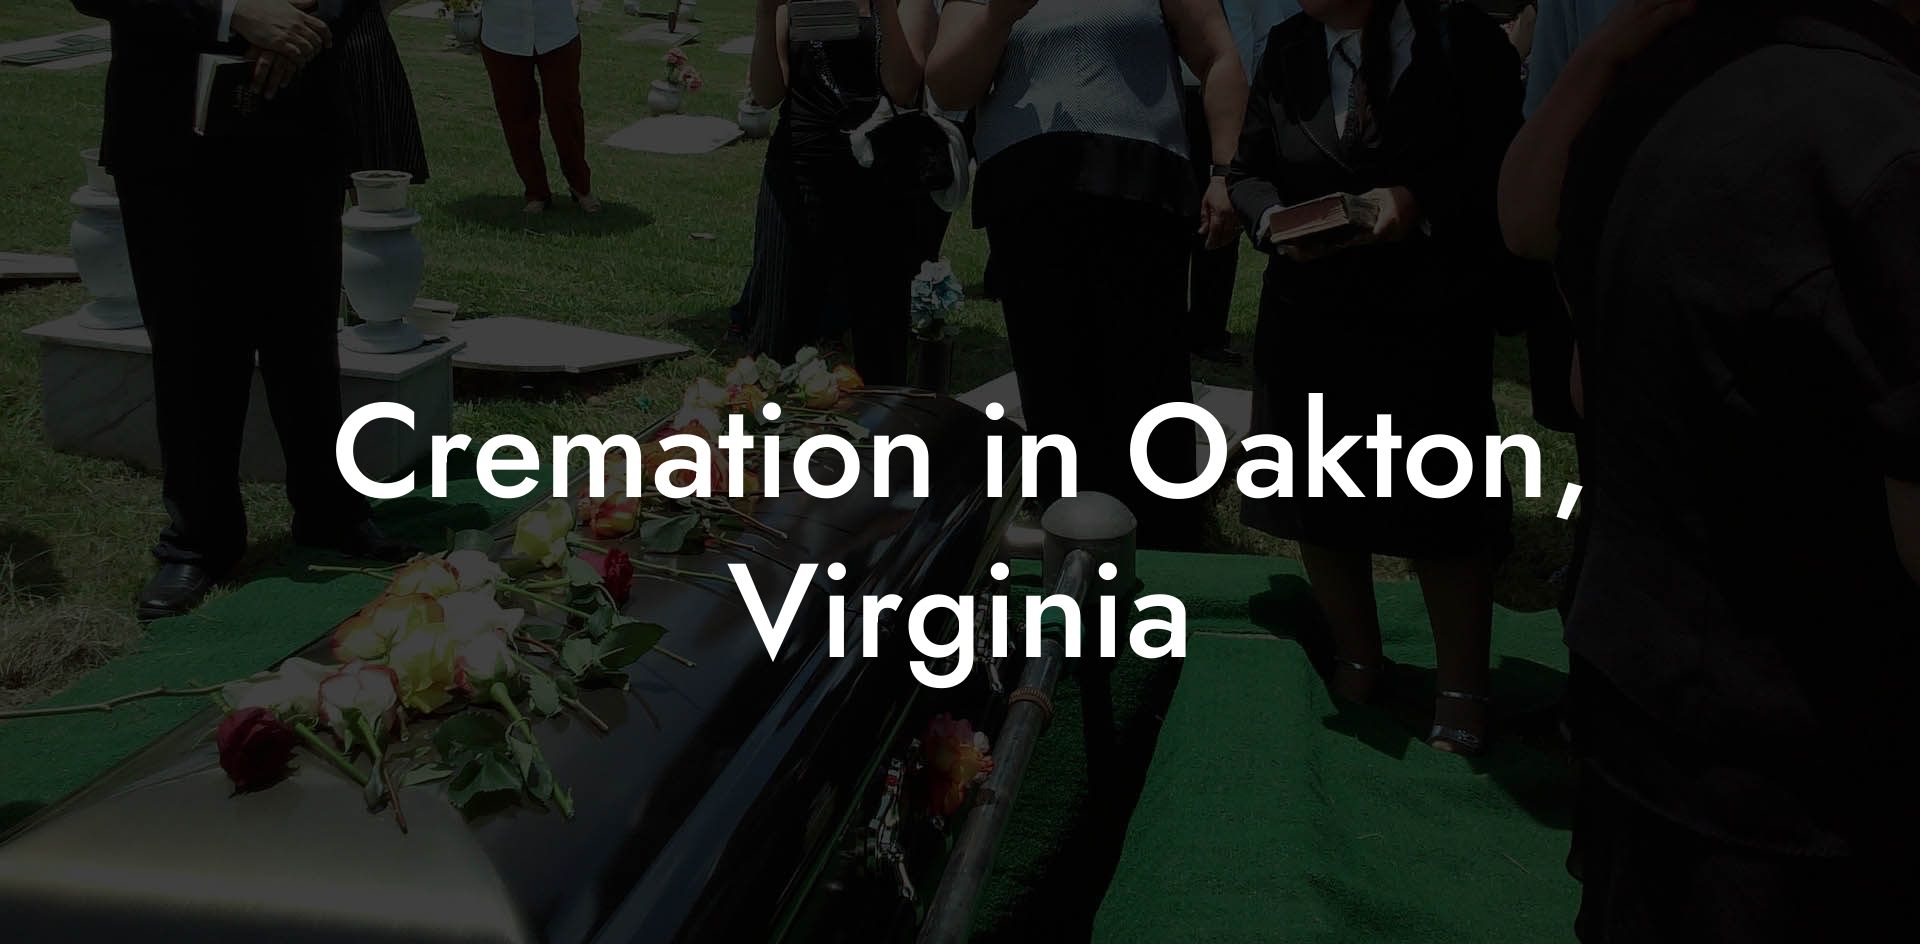 Cremation in Oakton, Virginia